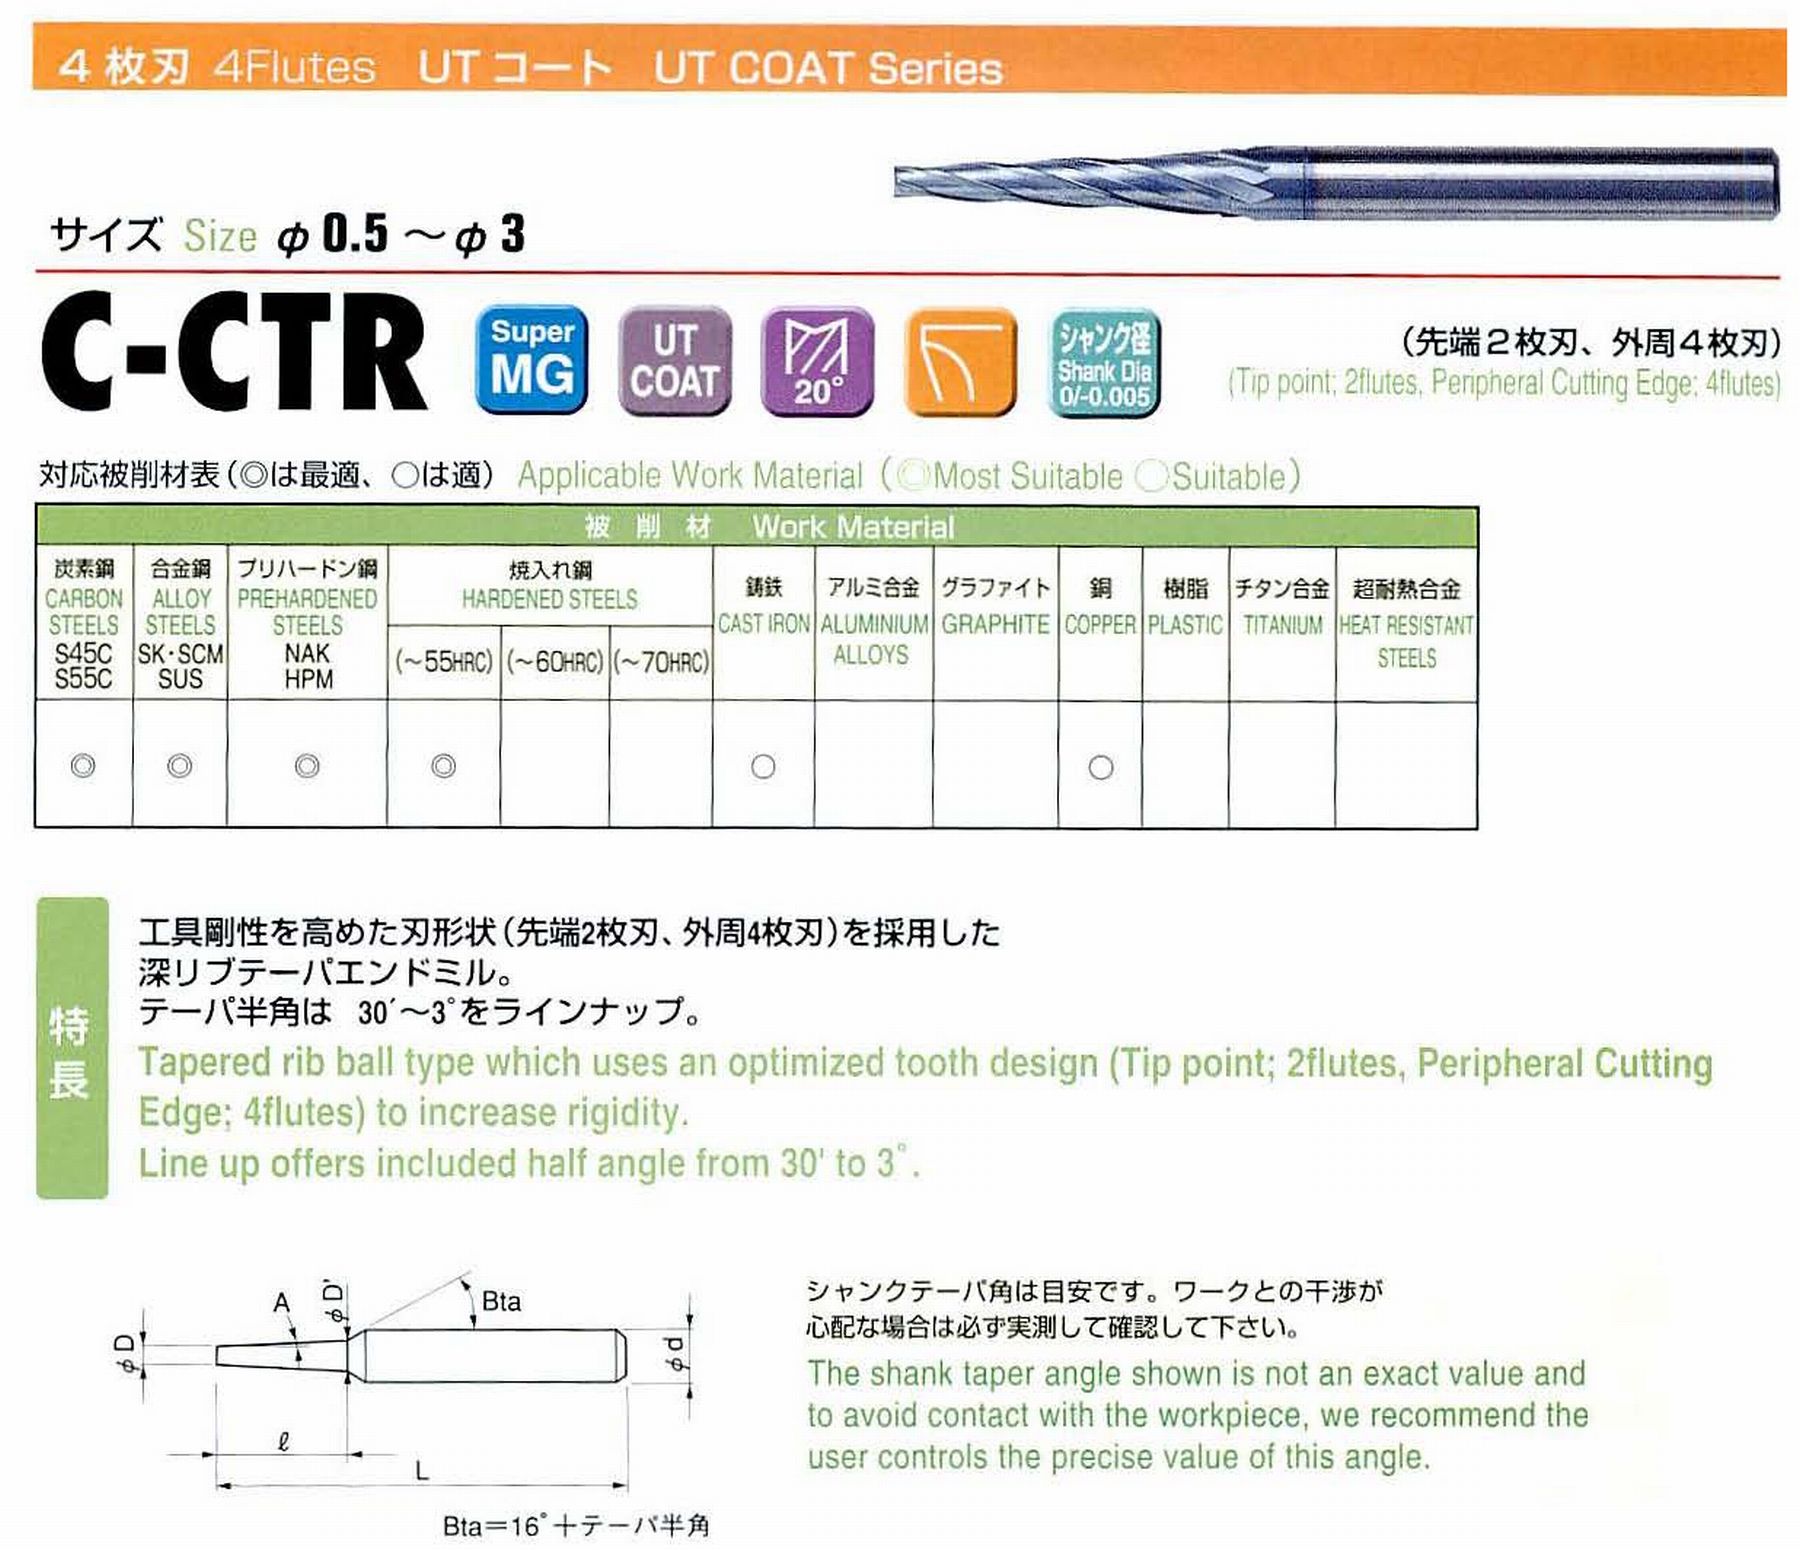 ユニオンツール 4枚刃 C-CTR4019-12-1 先端径1.9 テーパ半角30′ 刃長12 大端径2.11 全長45 シャンク径4